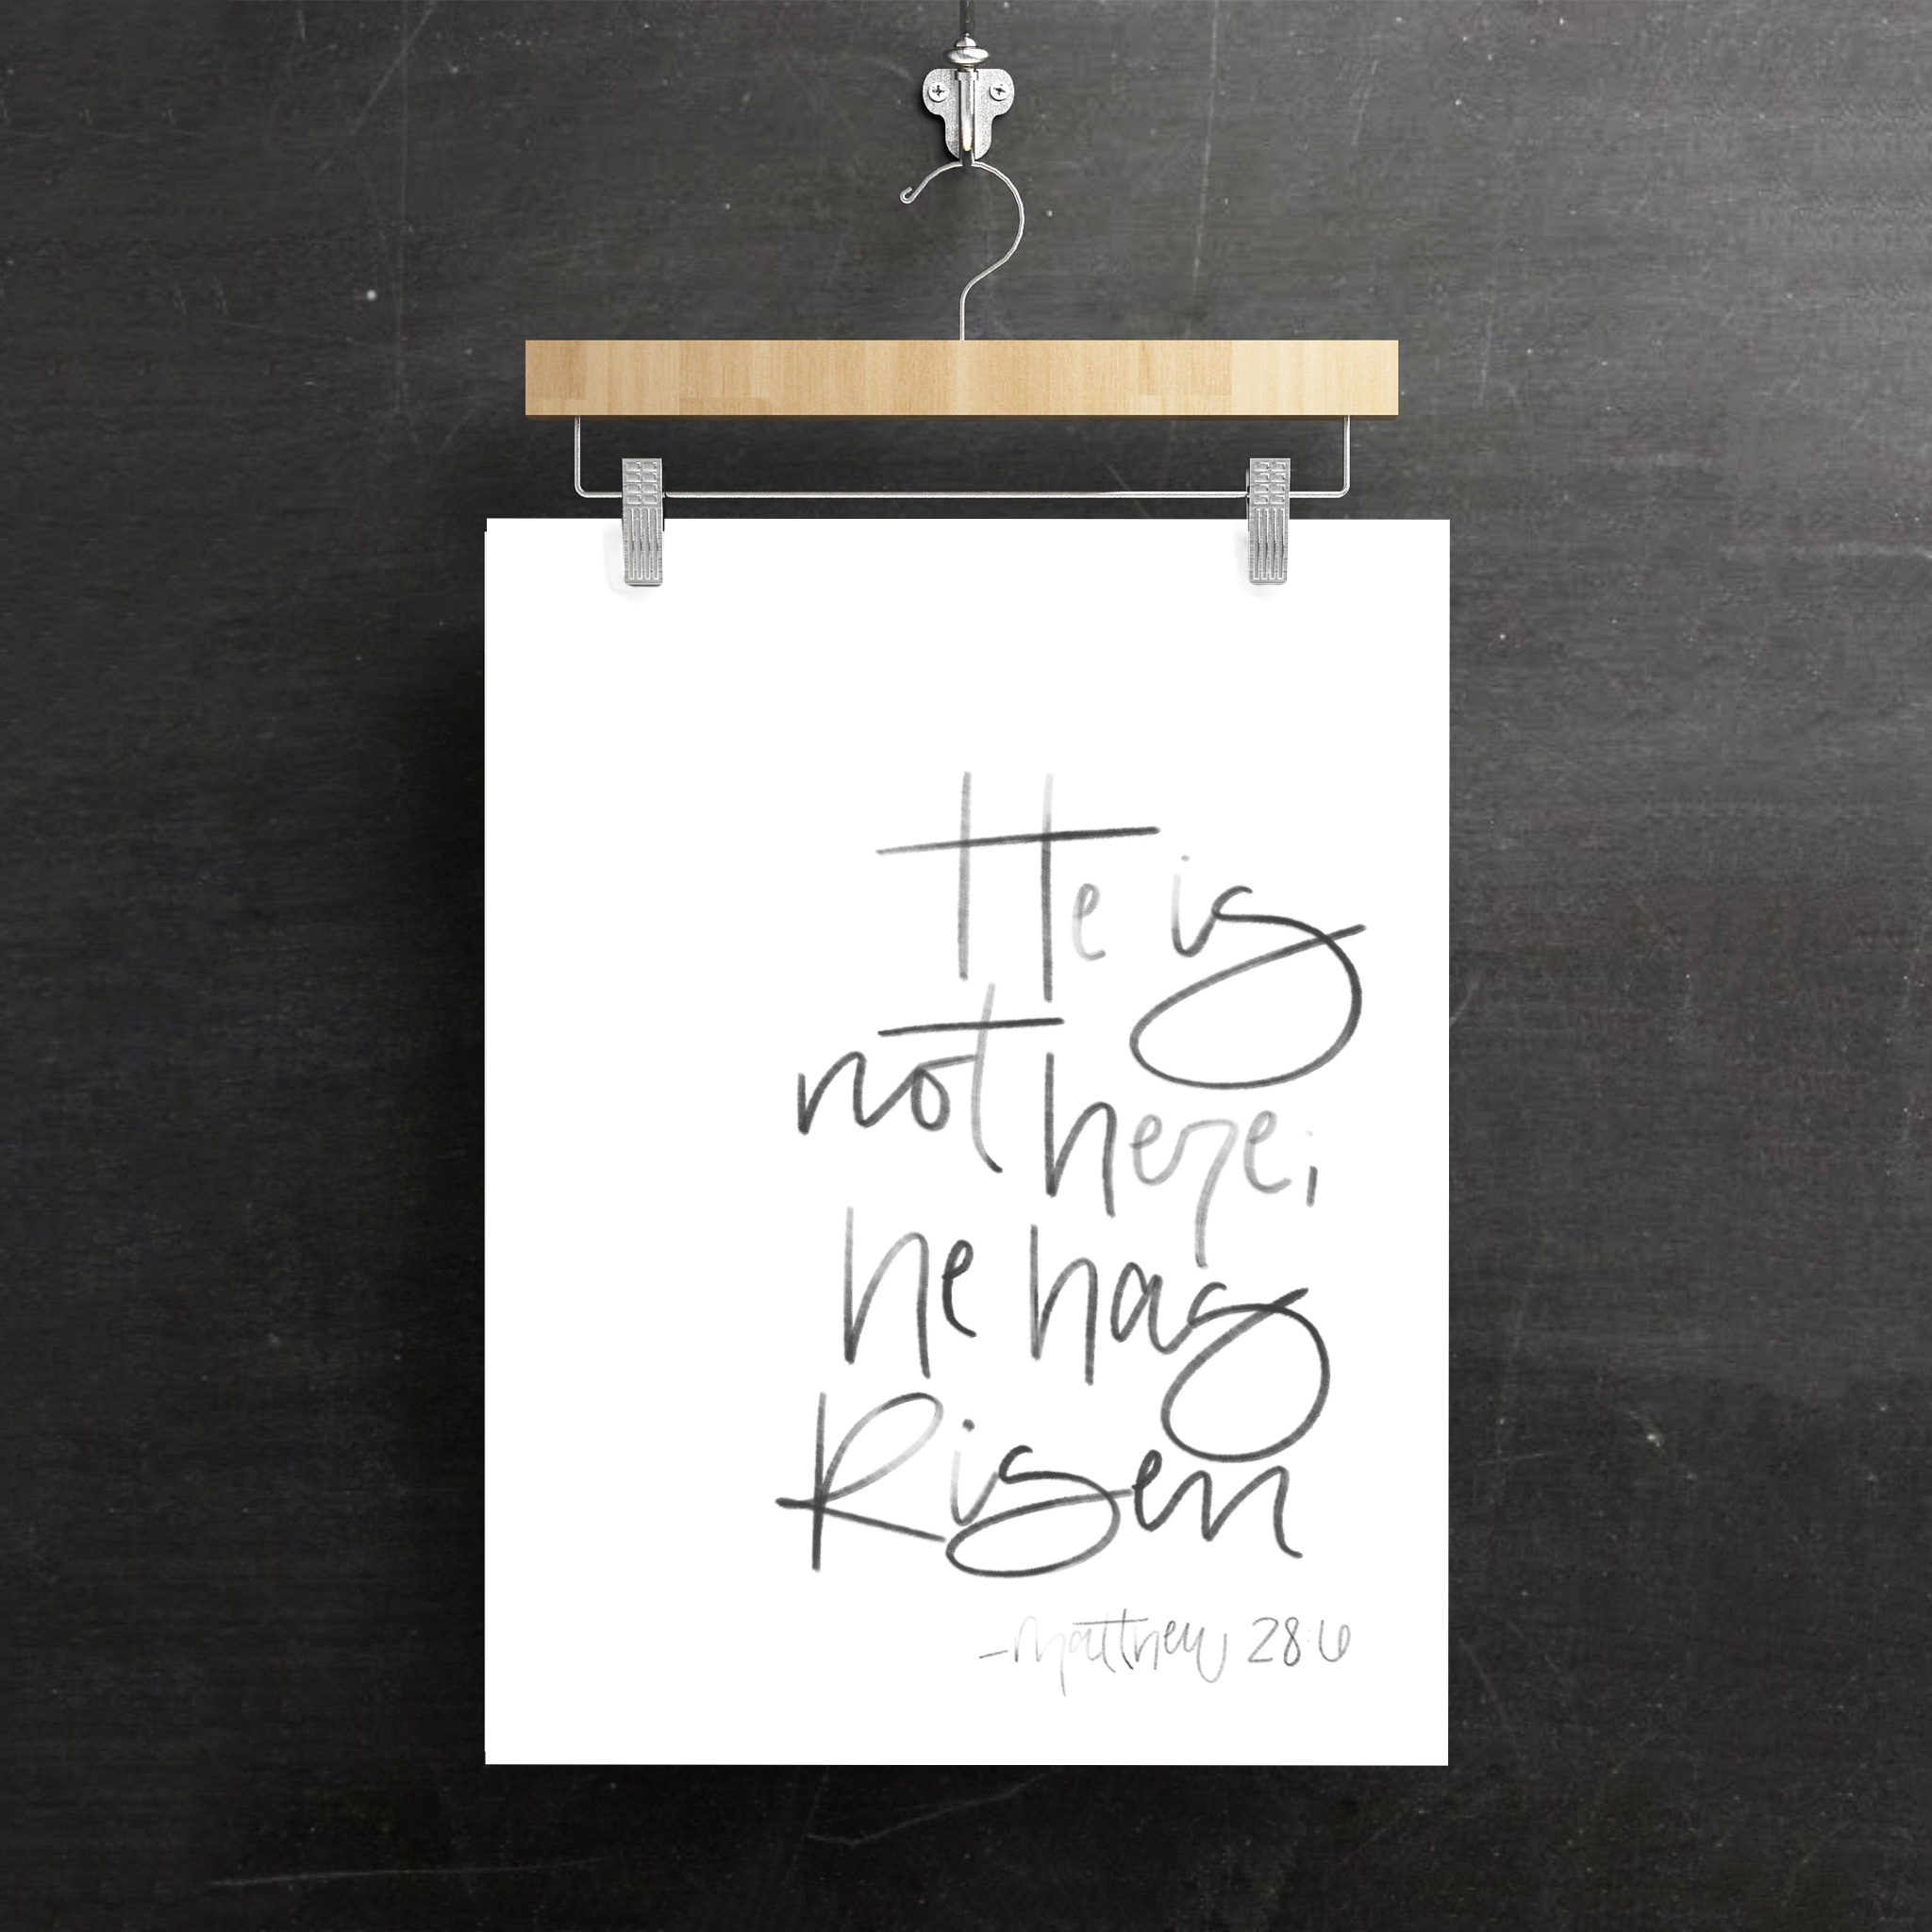 Hanging image "He is not here; he has Risen" Matthew 28:6